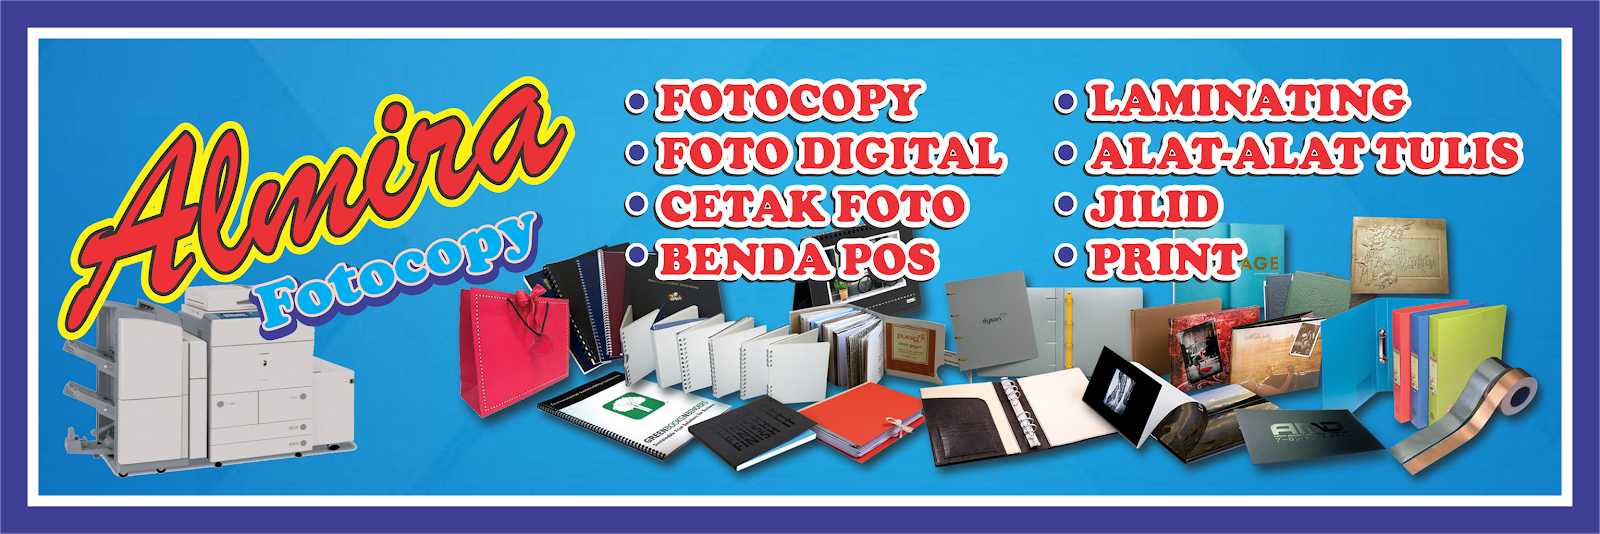 Download Desain Grafis Spanduk Usaha Fotocopy Cdr Gratis Desain Grafis Tempat Desain Format Cdr